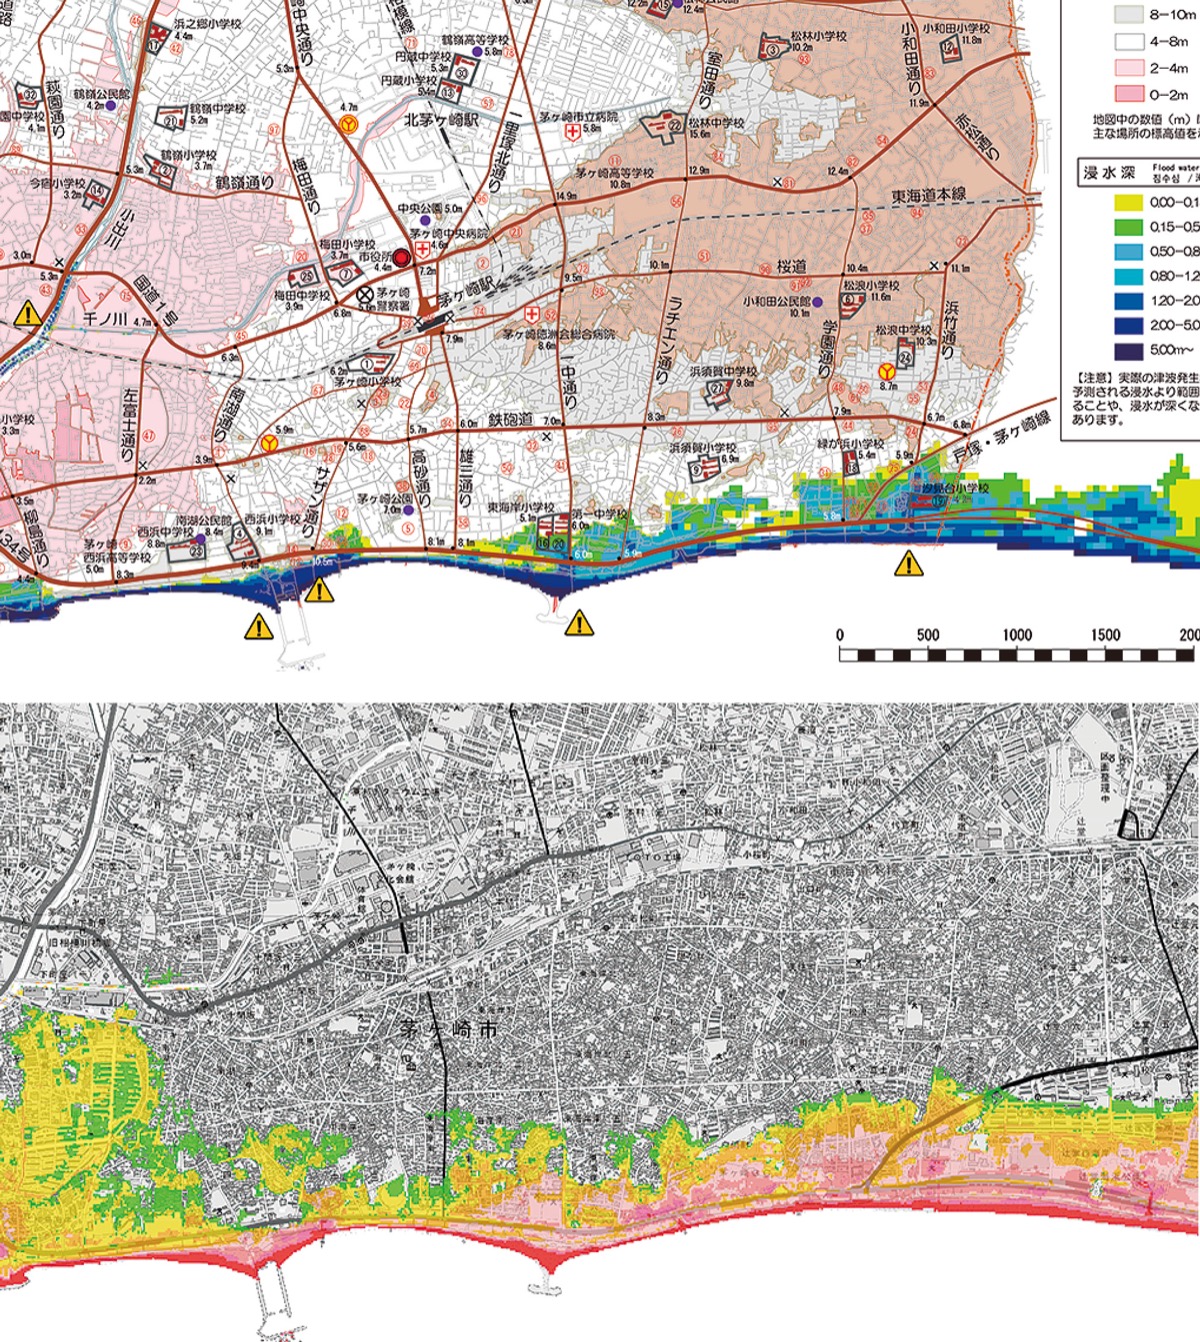  津波ハザードマップ 浸水想定いまだ旧基準 相模湾沿い茅ヶ崎市のみ | 茅ヶ崎 | タウンニュース